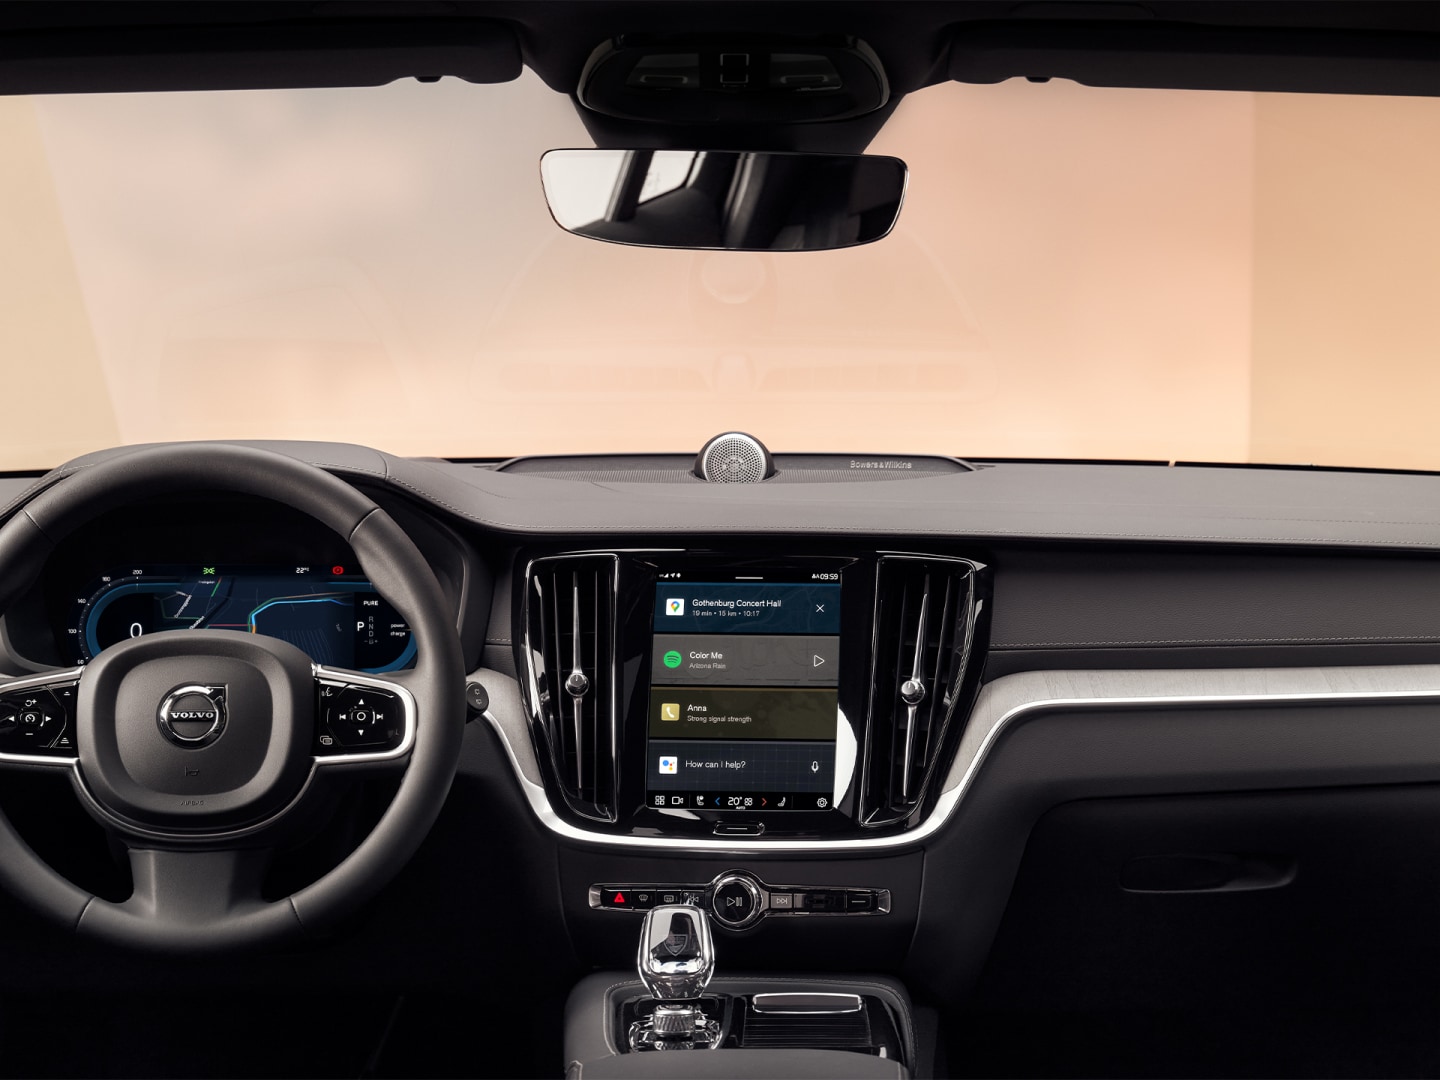 Το τιμόνι, ο πίνακας οργάνων και η κεντρική οθόνη αφής του συστήματος infotainment του Volvo V60 plug-in hybrid.